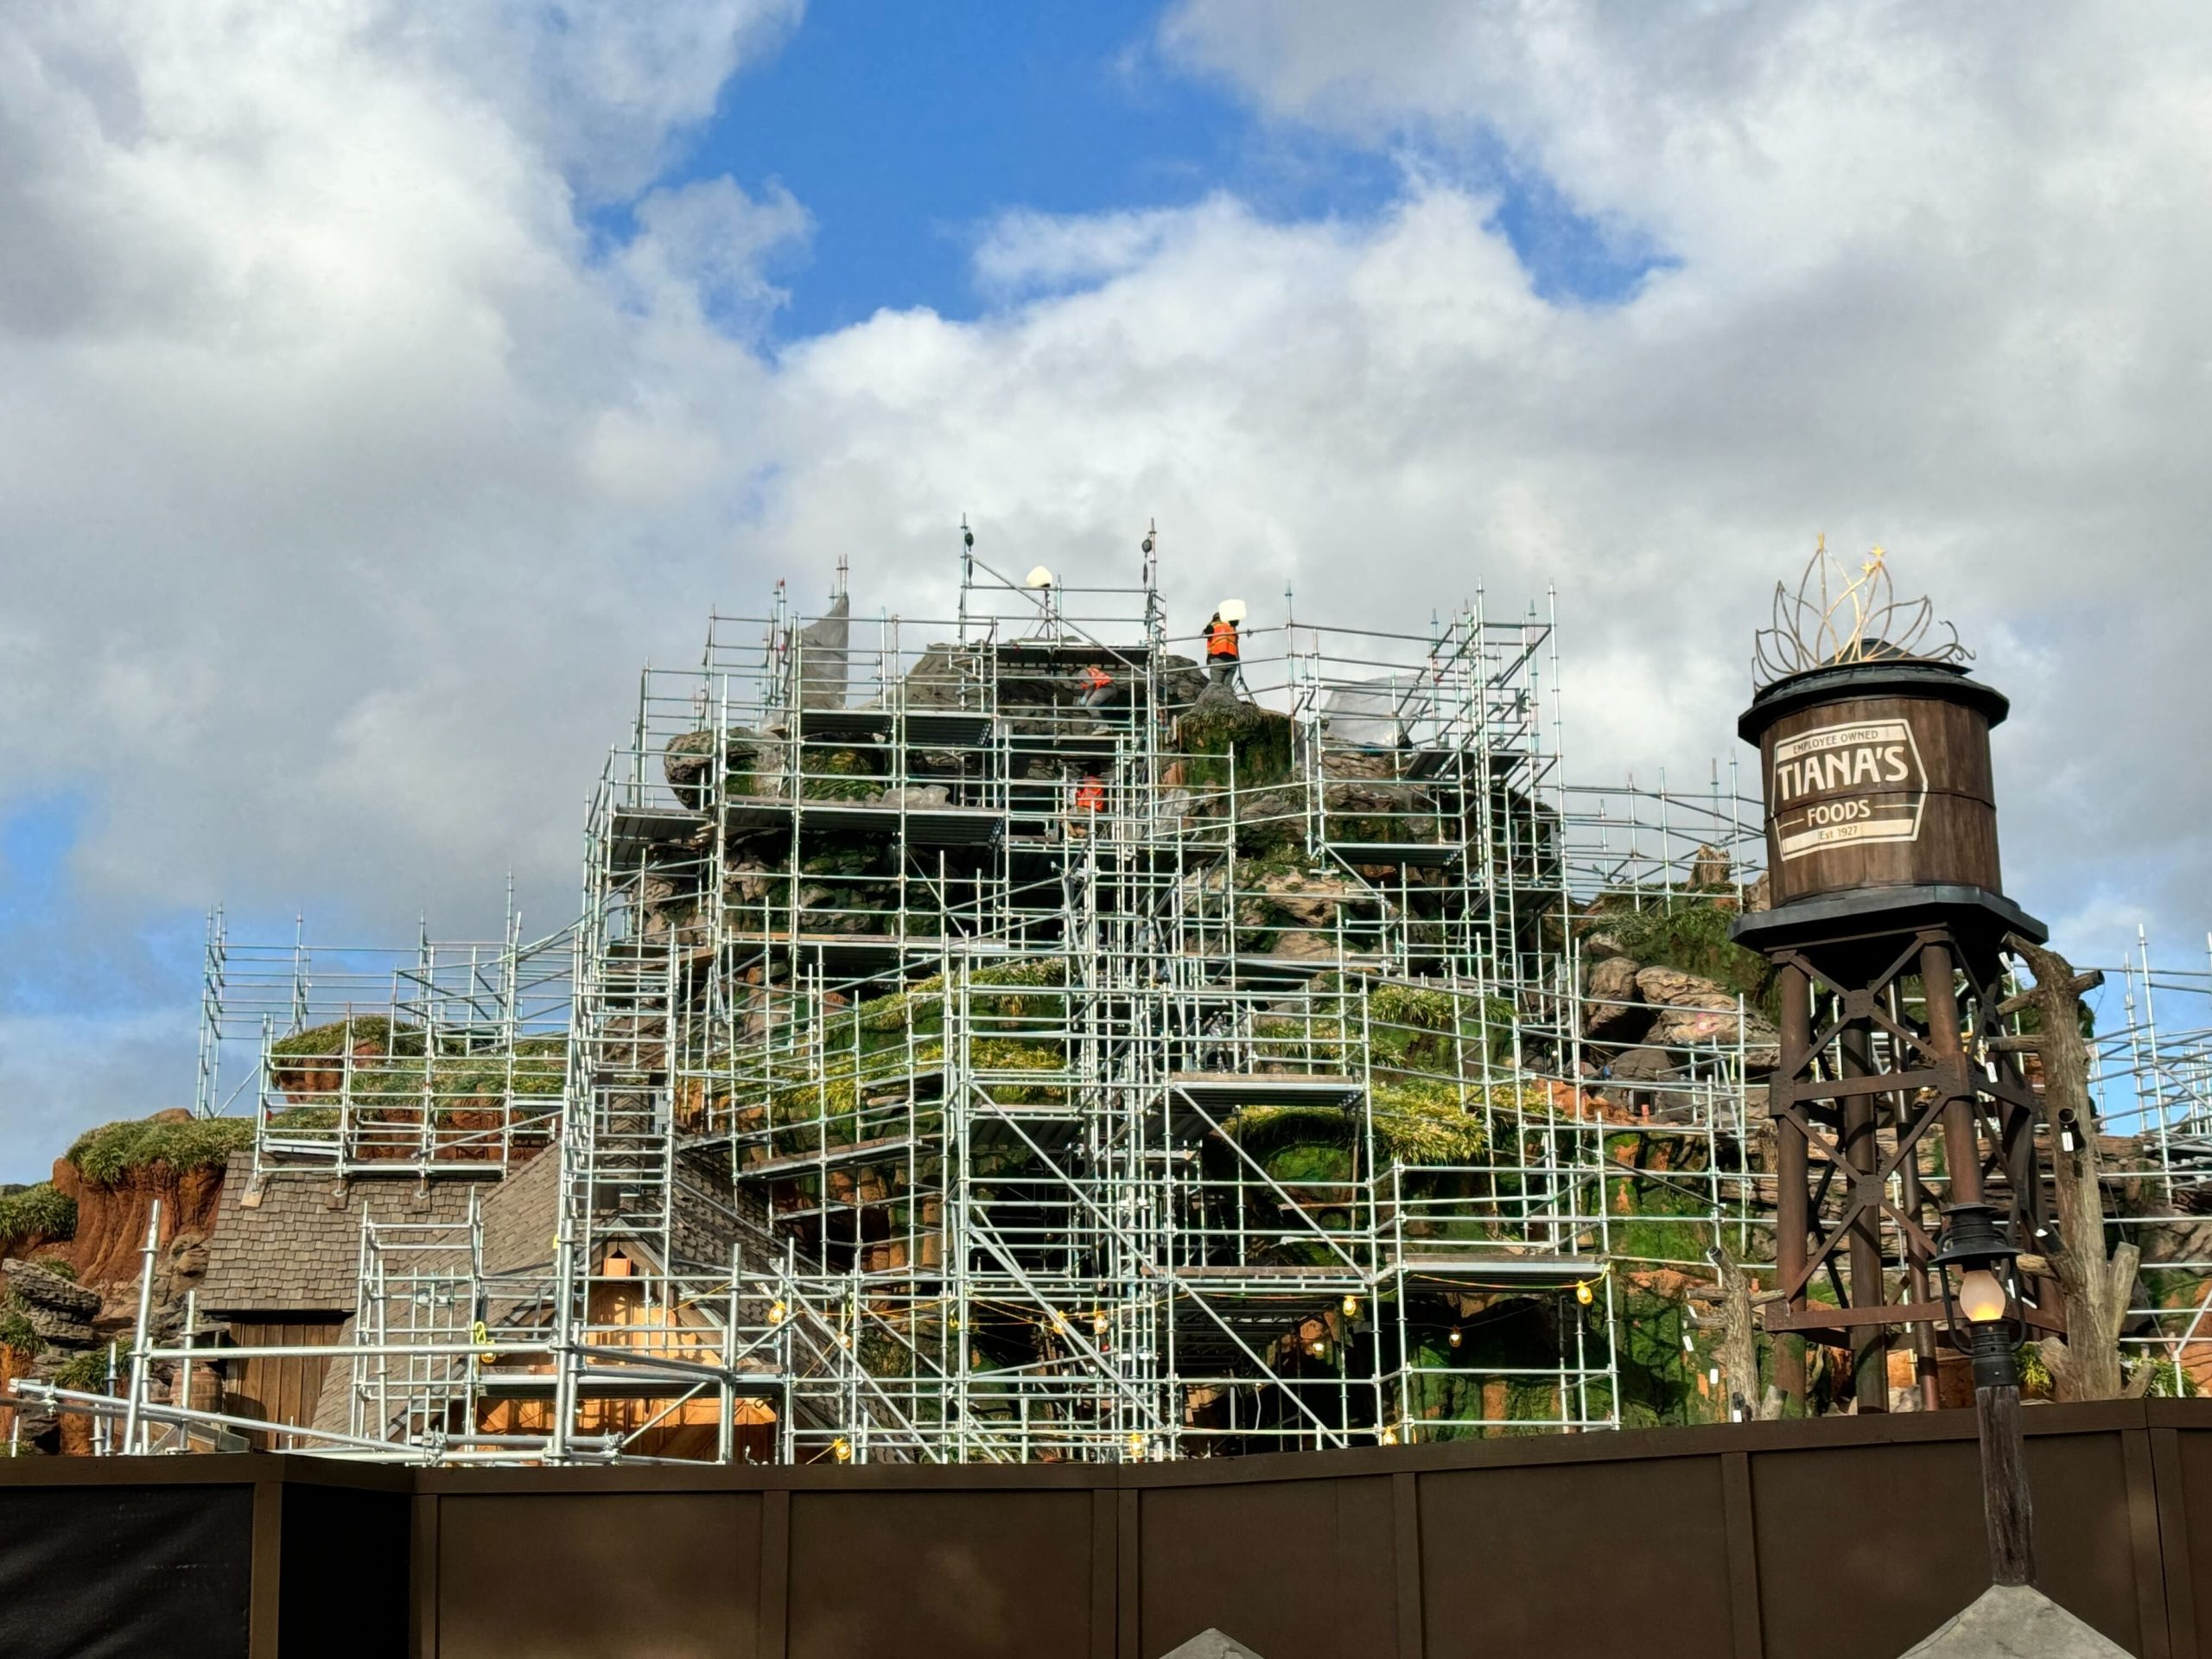 Tiana's Construction, Magic Kingdom